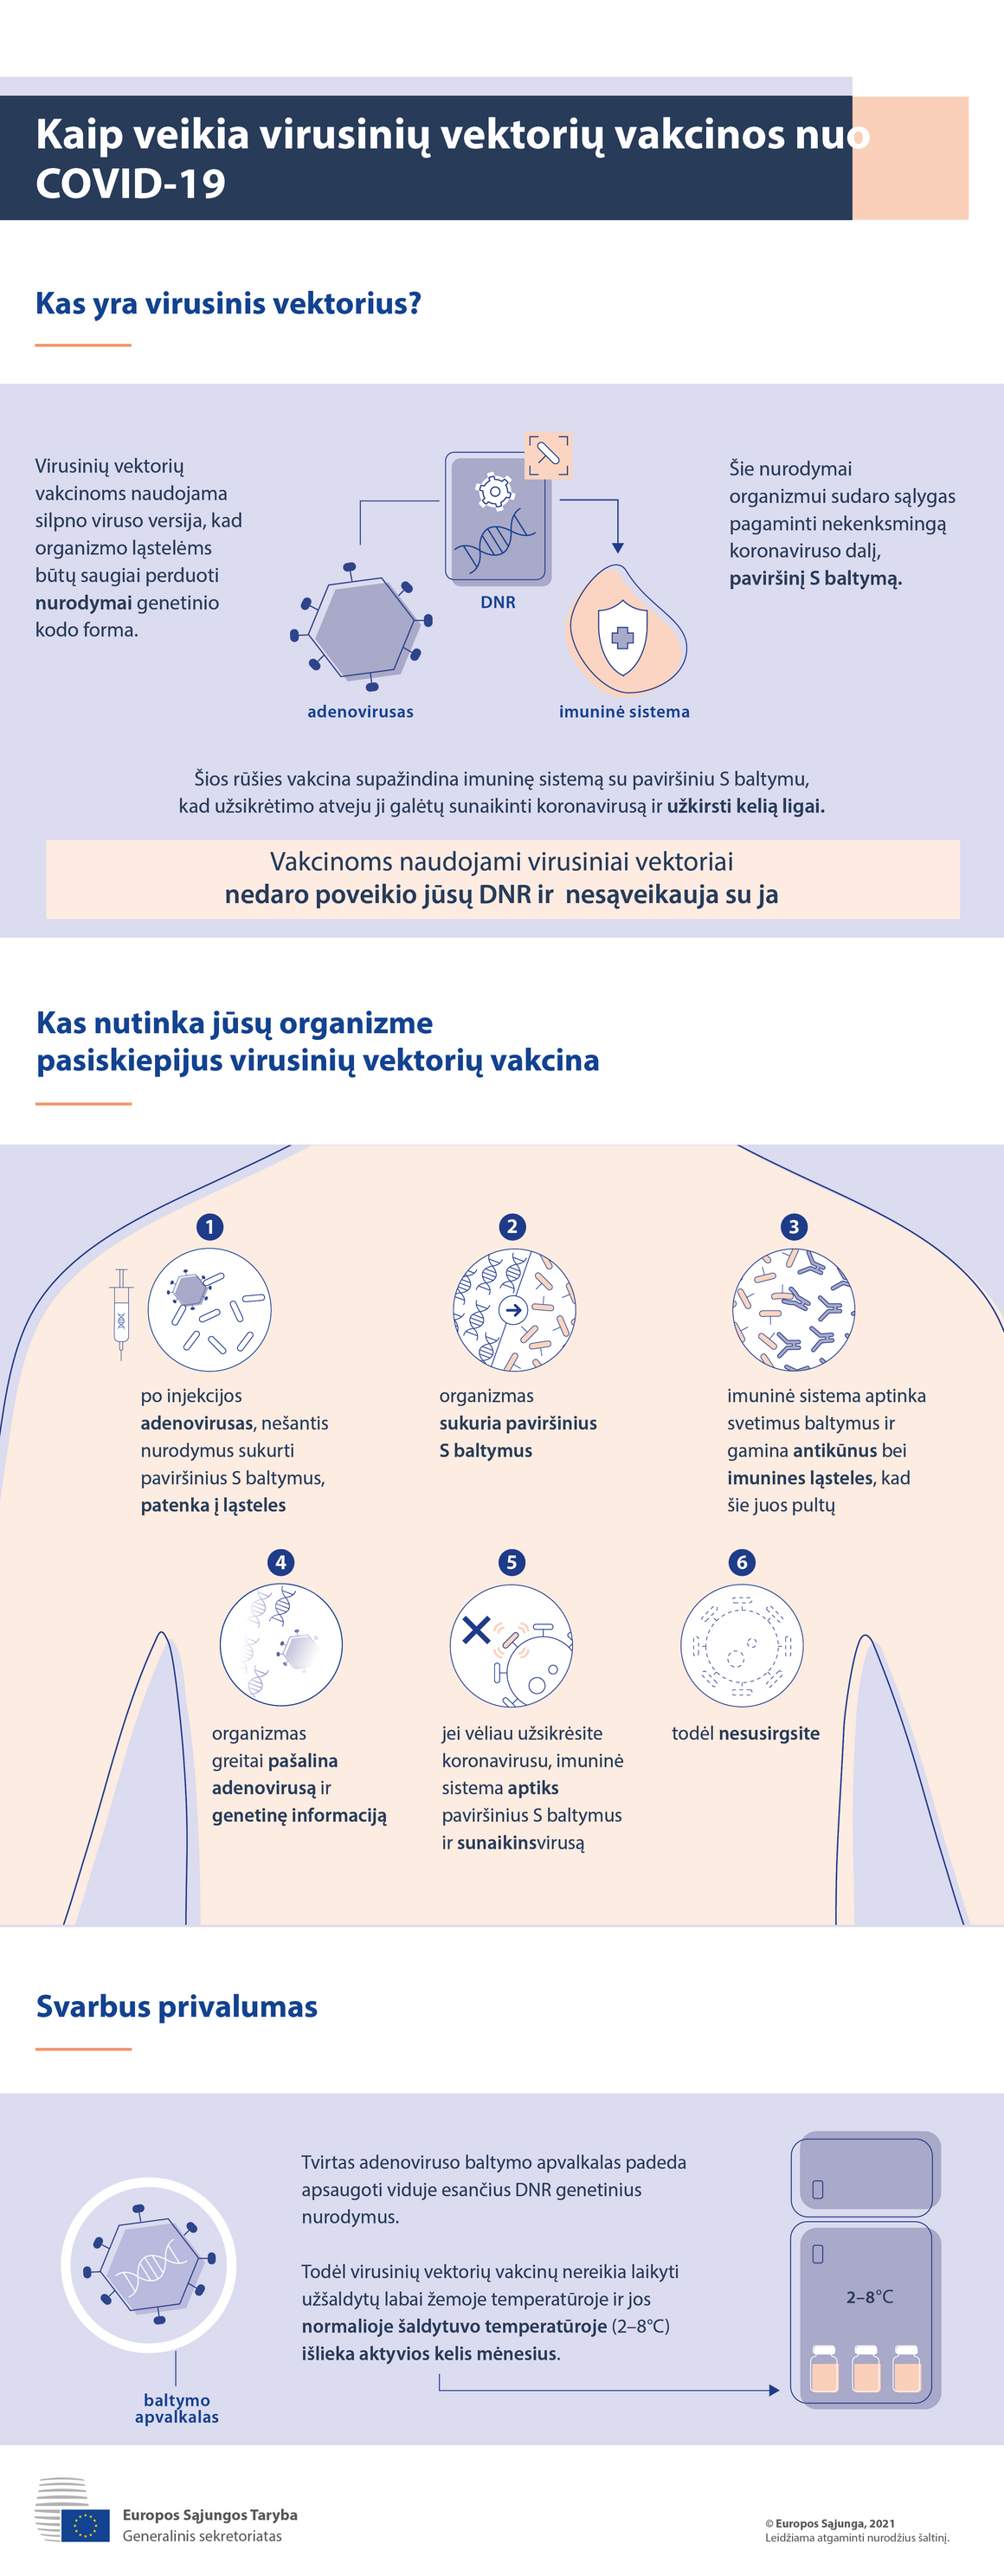 Infografikas. Virusinių vektorių vakcinos nuo COVID-19: kaip jos veikia